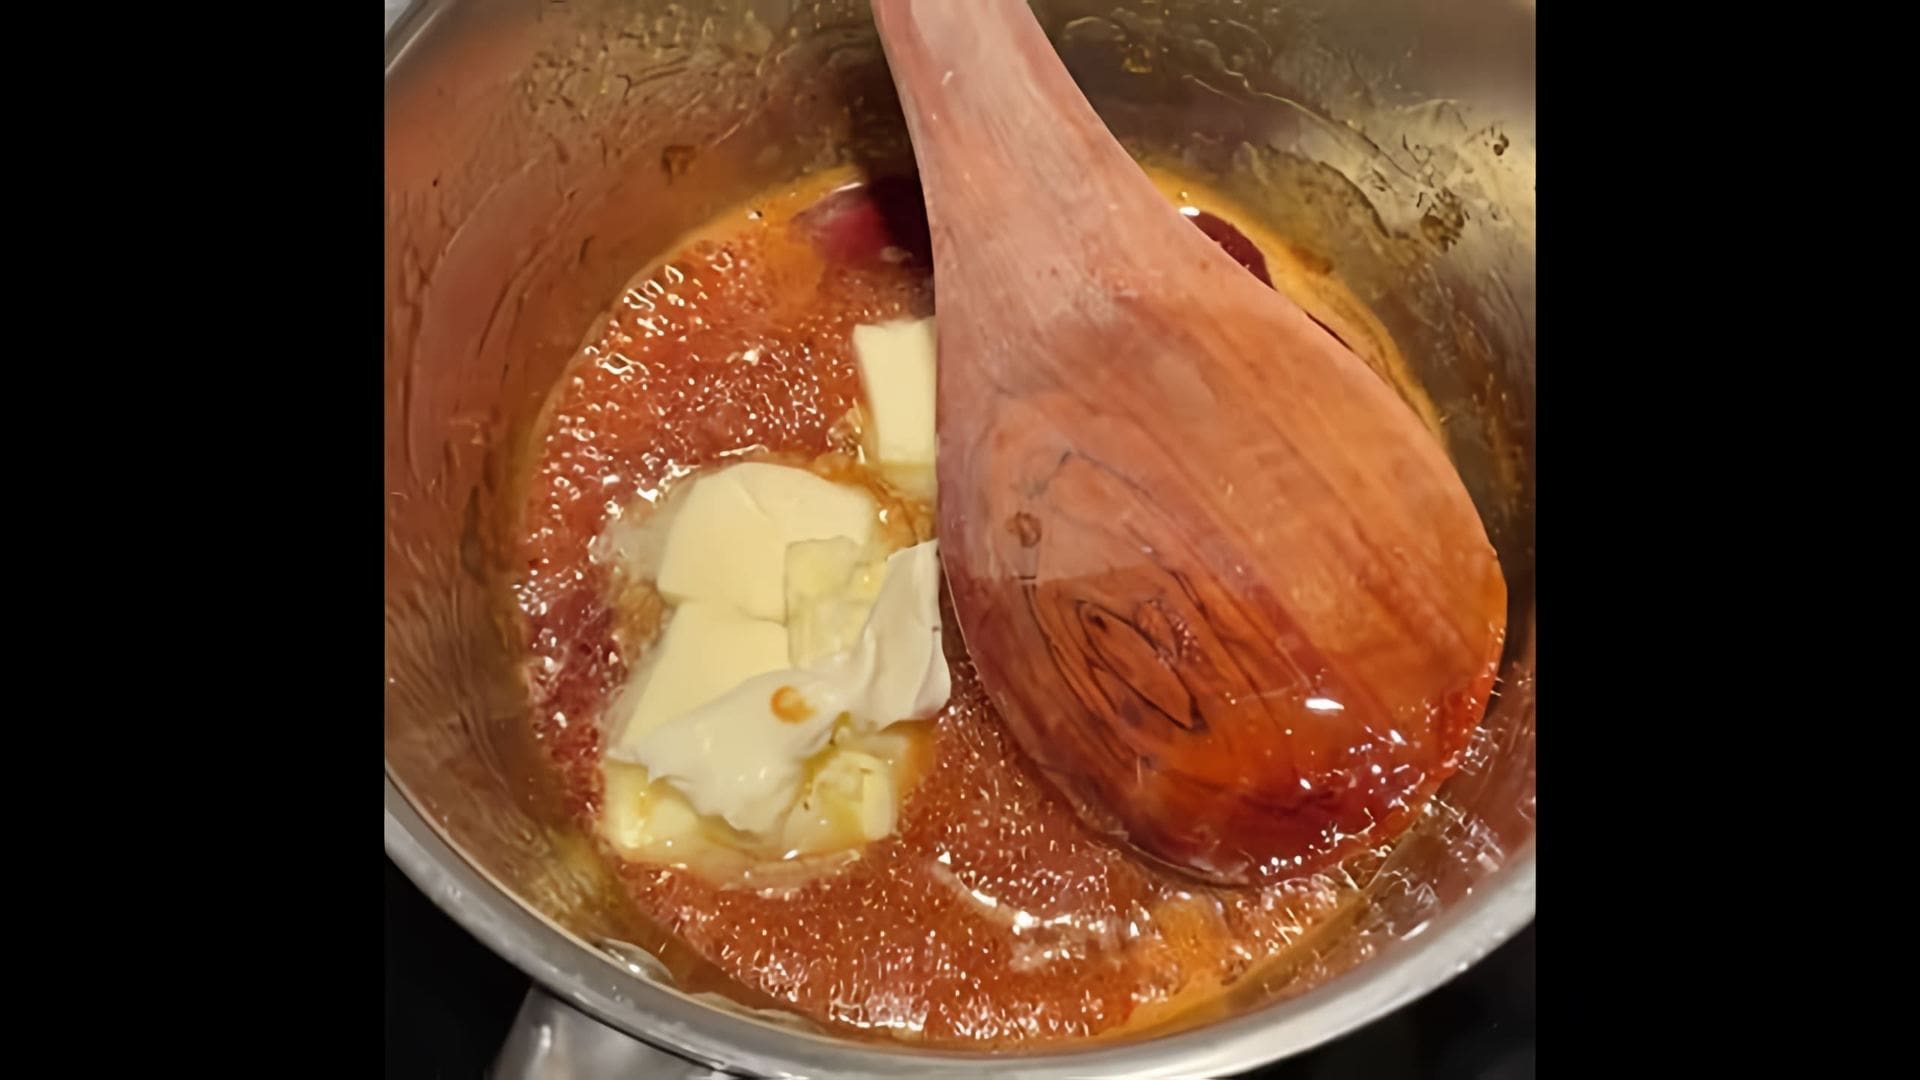 В этом видео демонстрируется рецепт приготовления рождественских пряников без использования меда